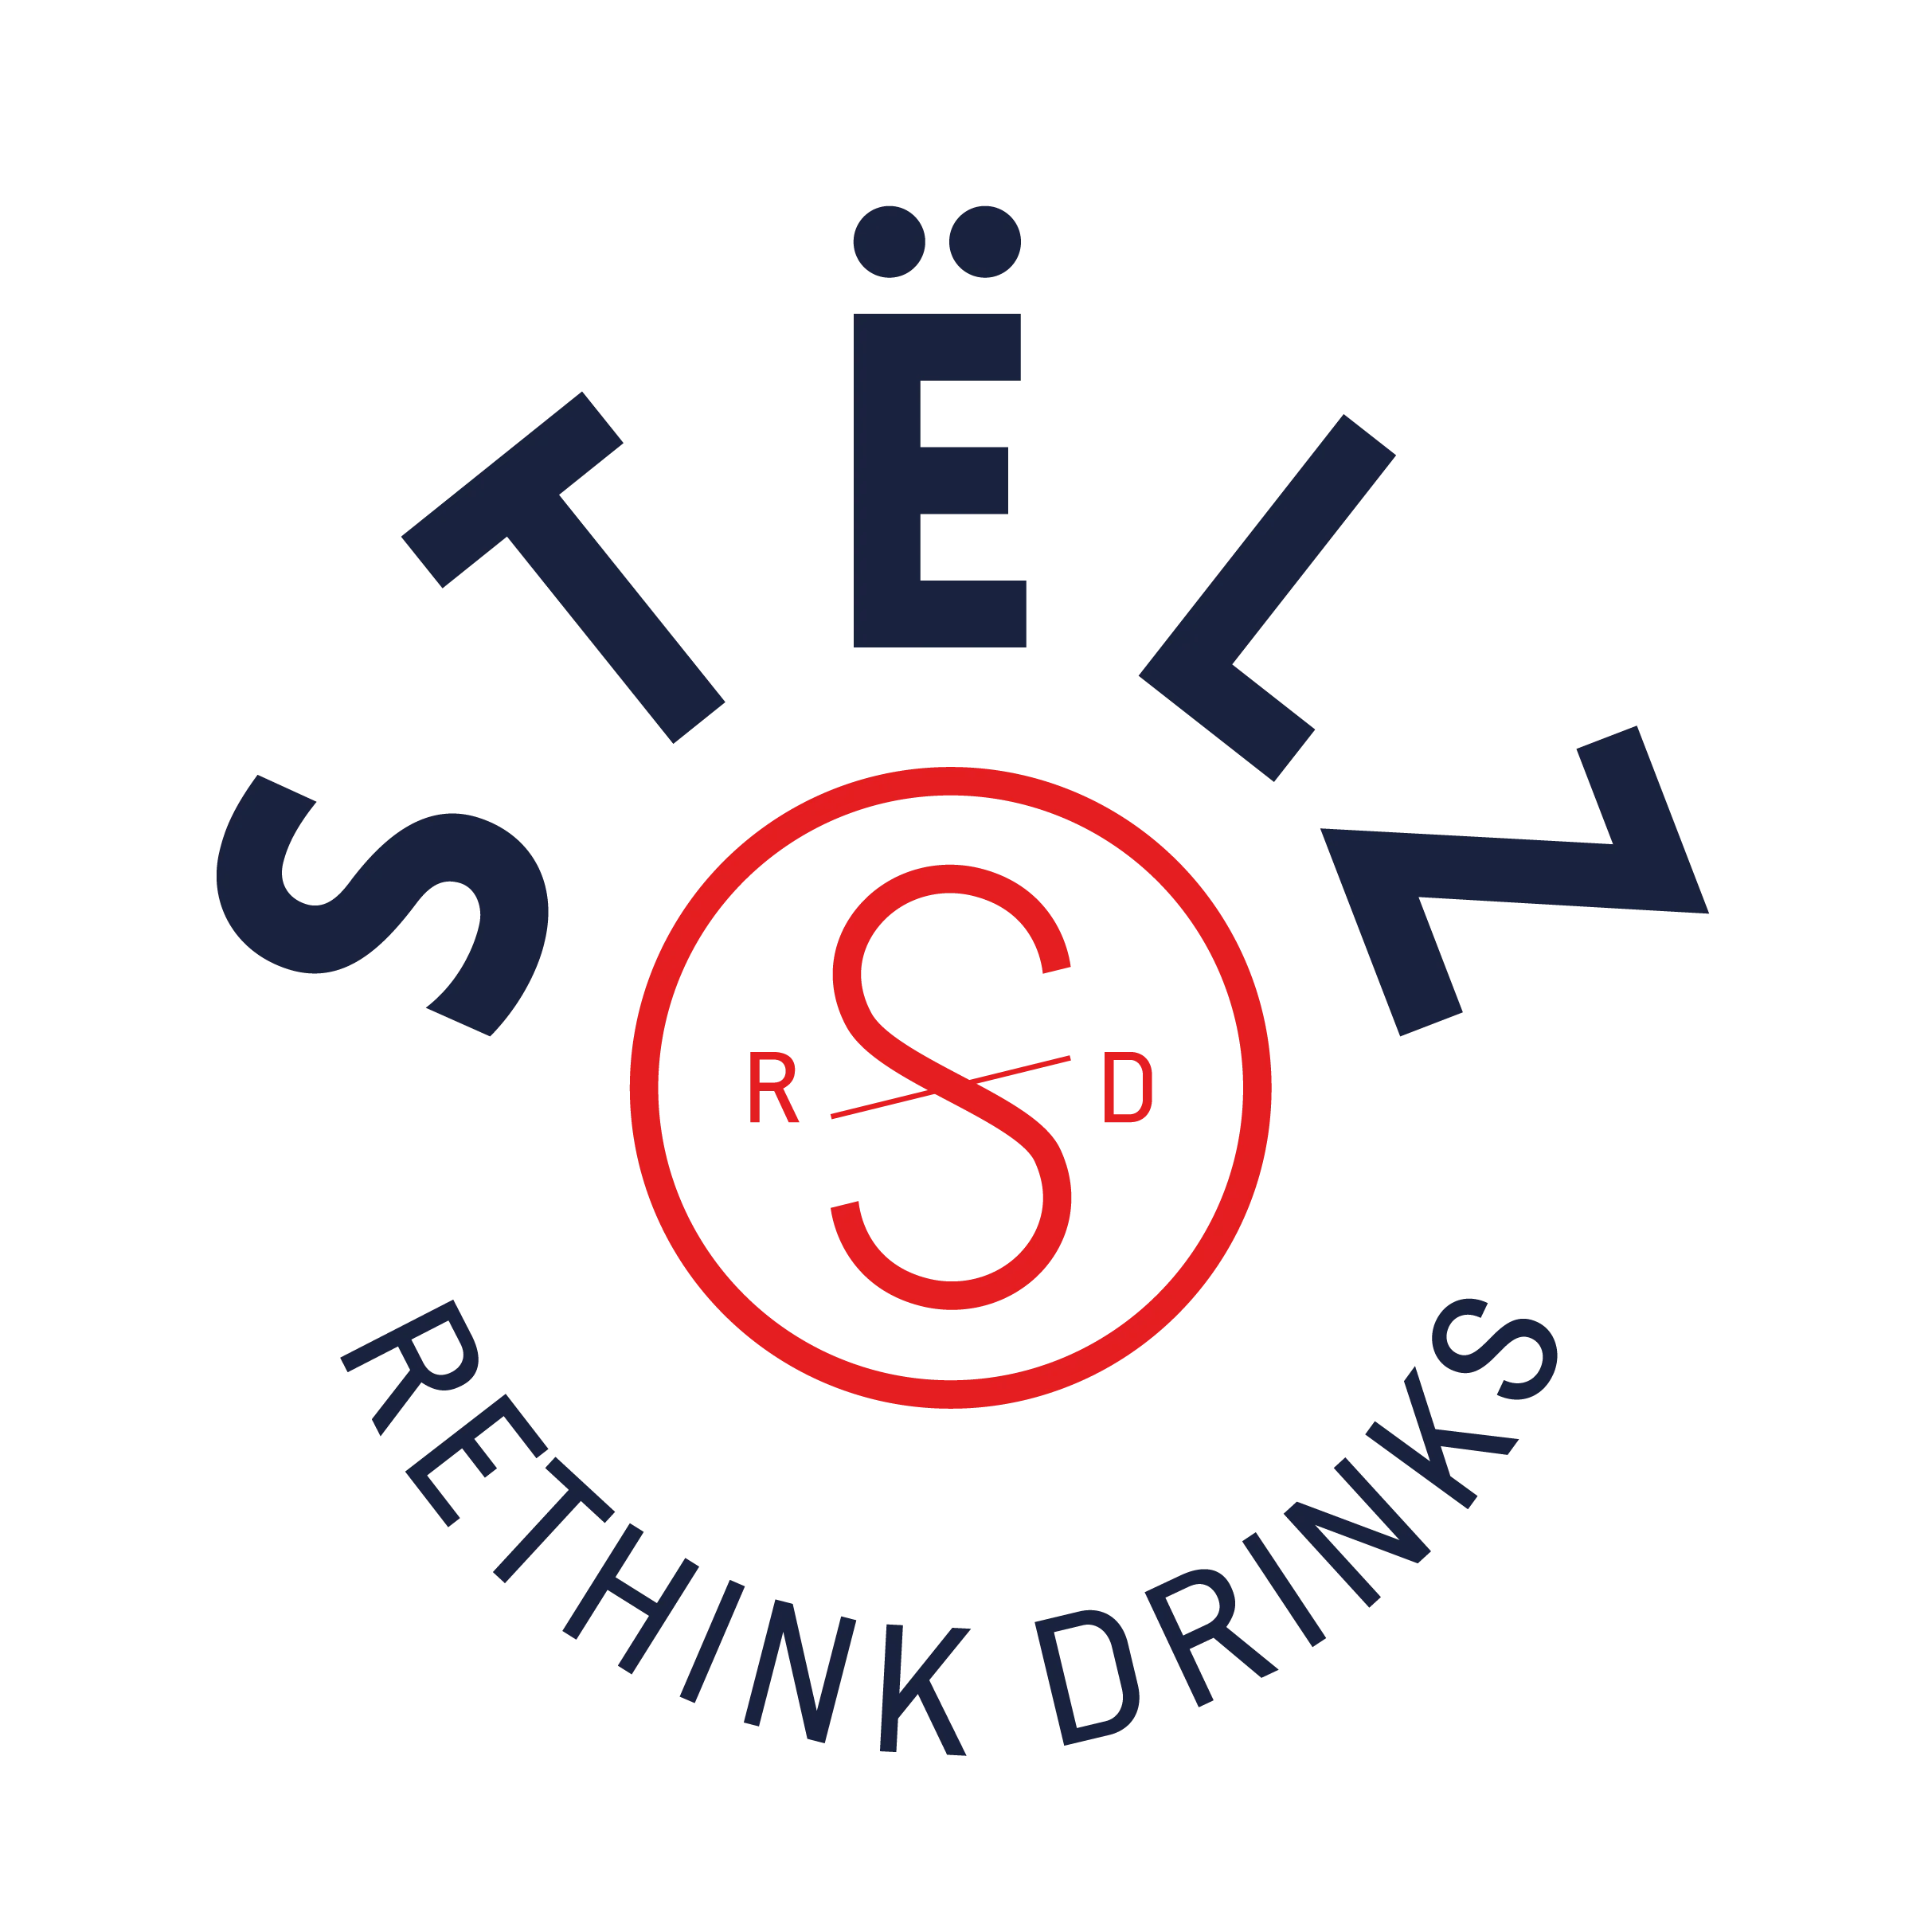 Stelz_Reithink_drinks_logo_Main_34210e08-39da-4e12-a19d-d64ffc6f04af